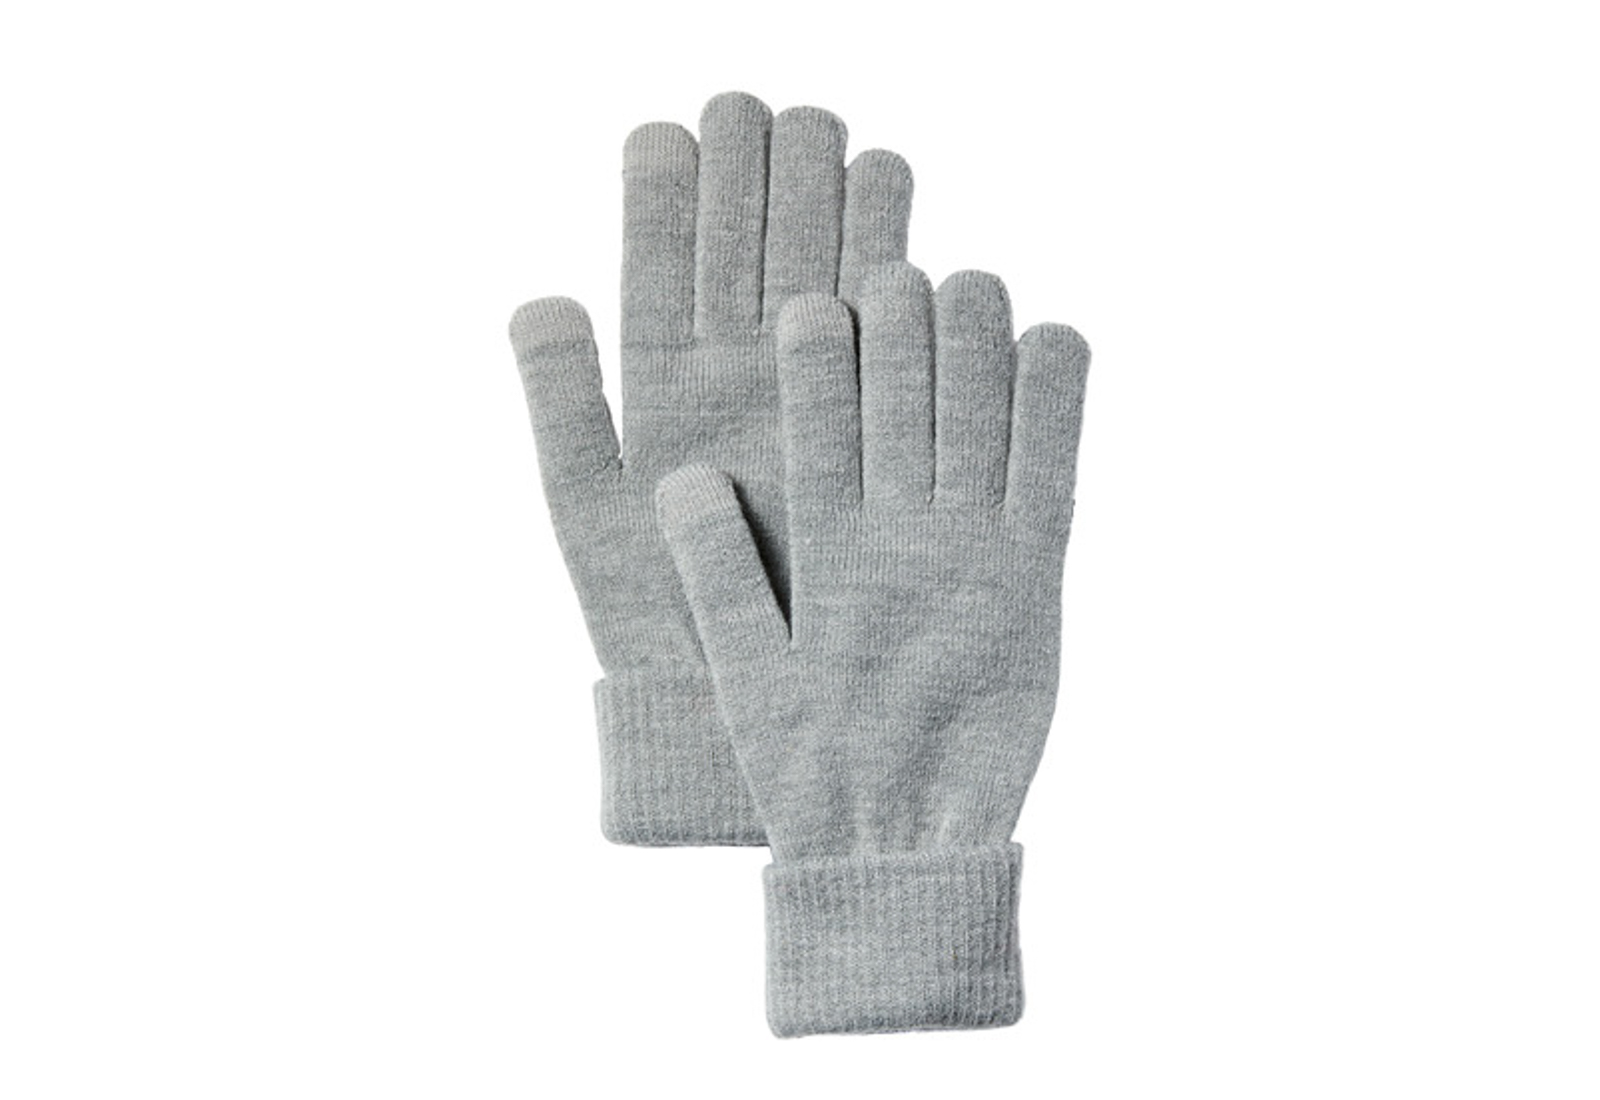 Timberland Haine Magic Glove W Foldover Cuff